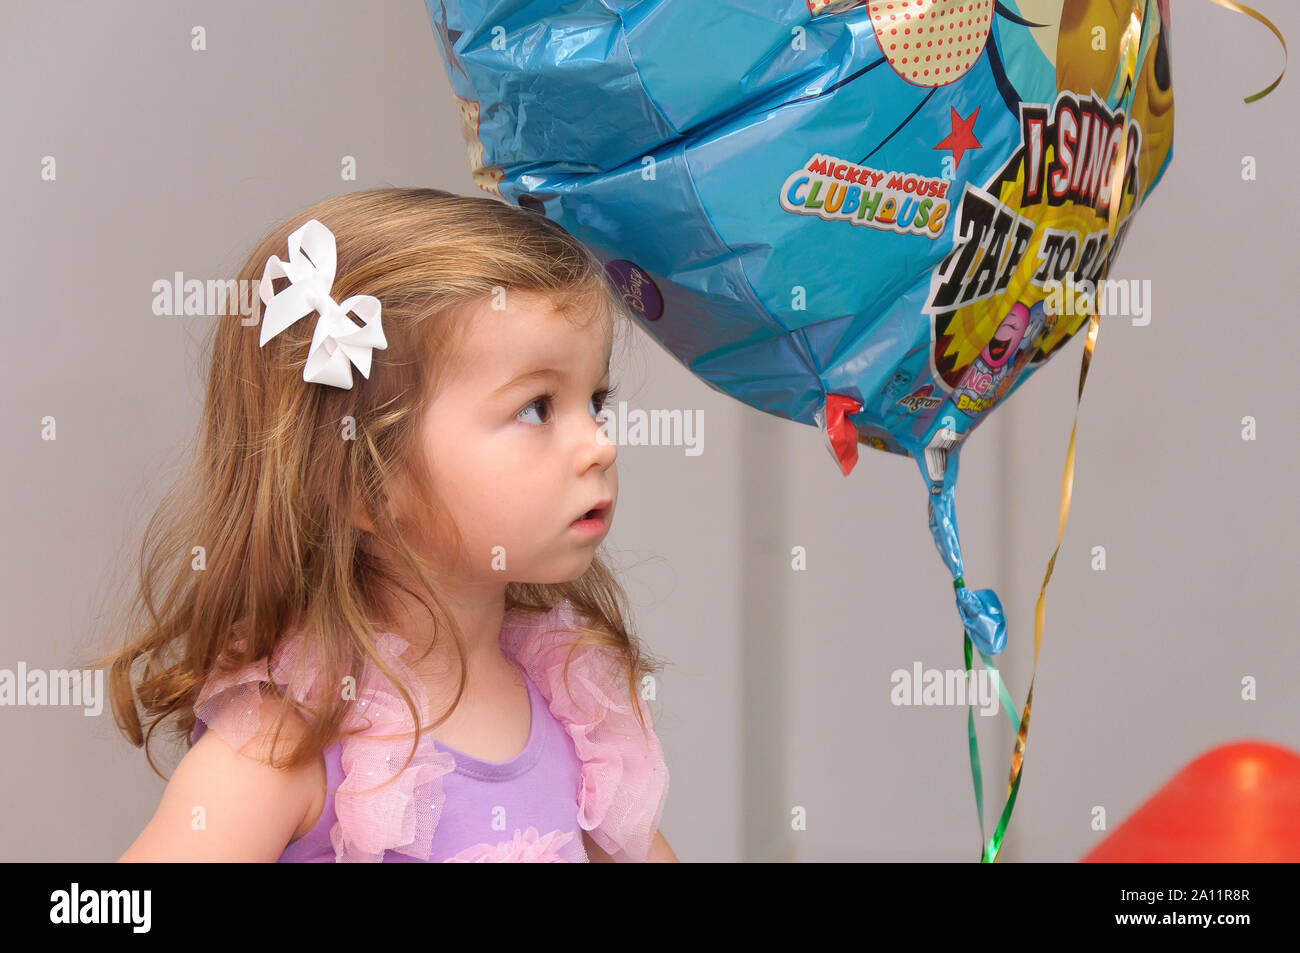 Portrait authentique et sincère d'une adorable petite fille de deux ans à cheveux blonds avec un ballon à la fête d'un enfant Banque D'Images